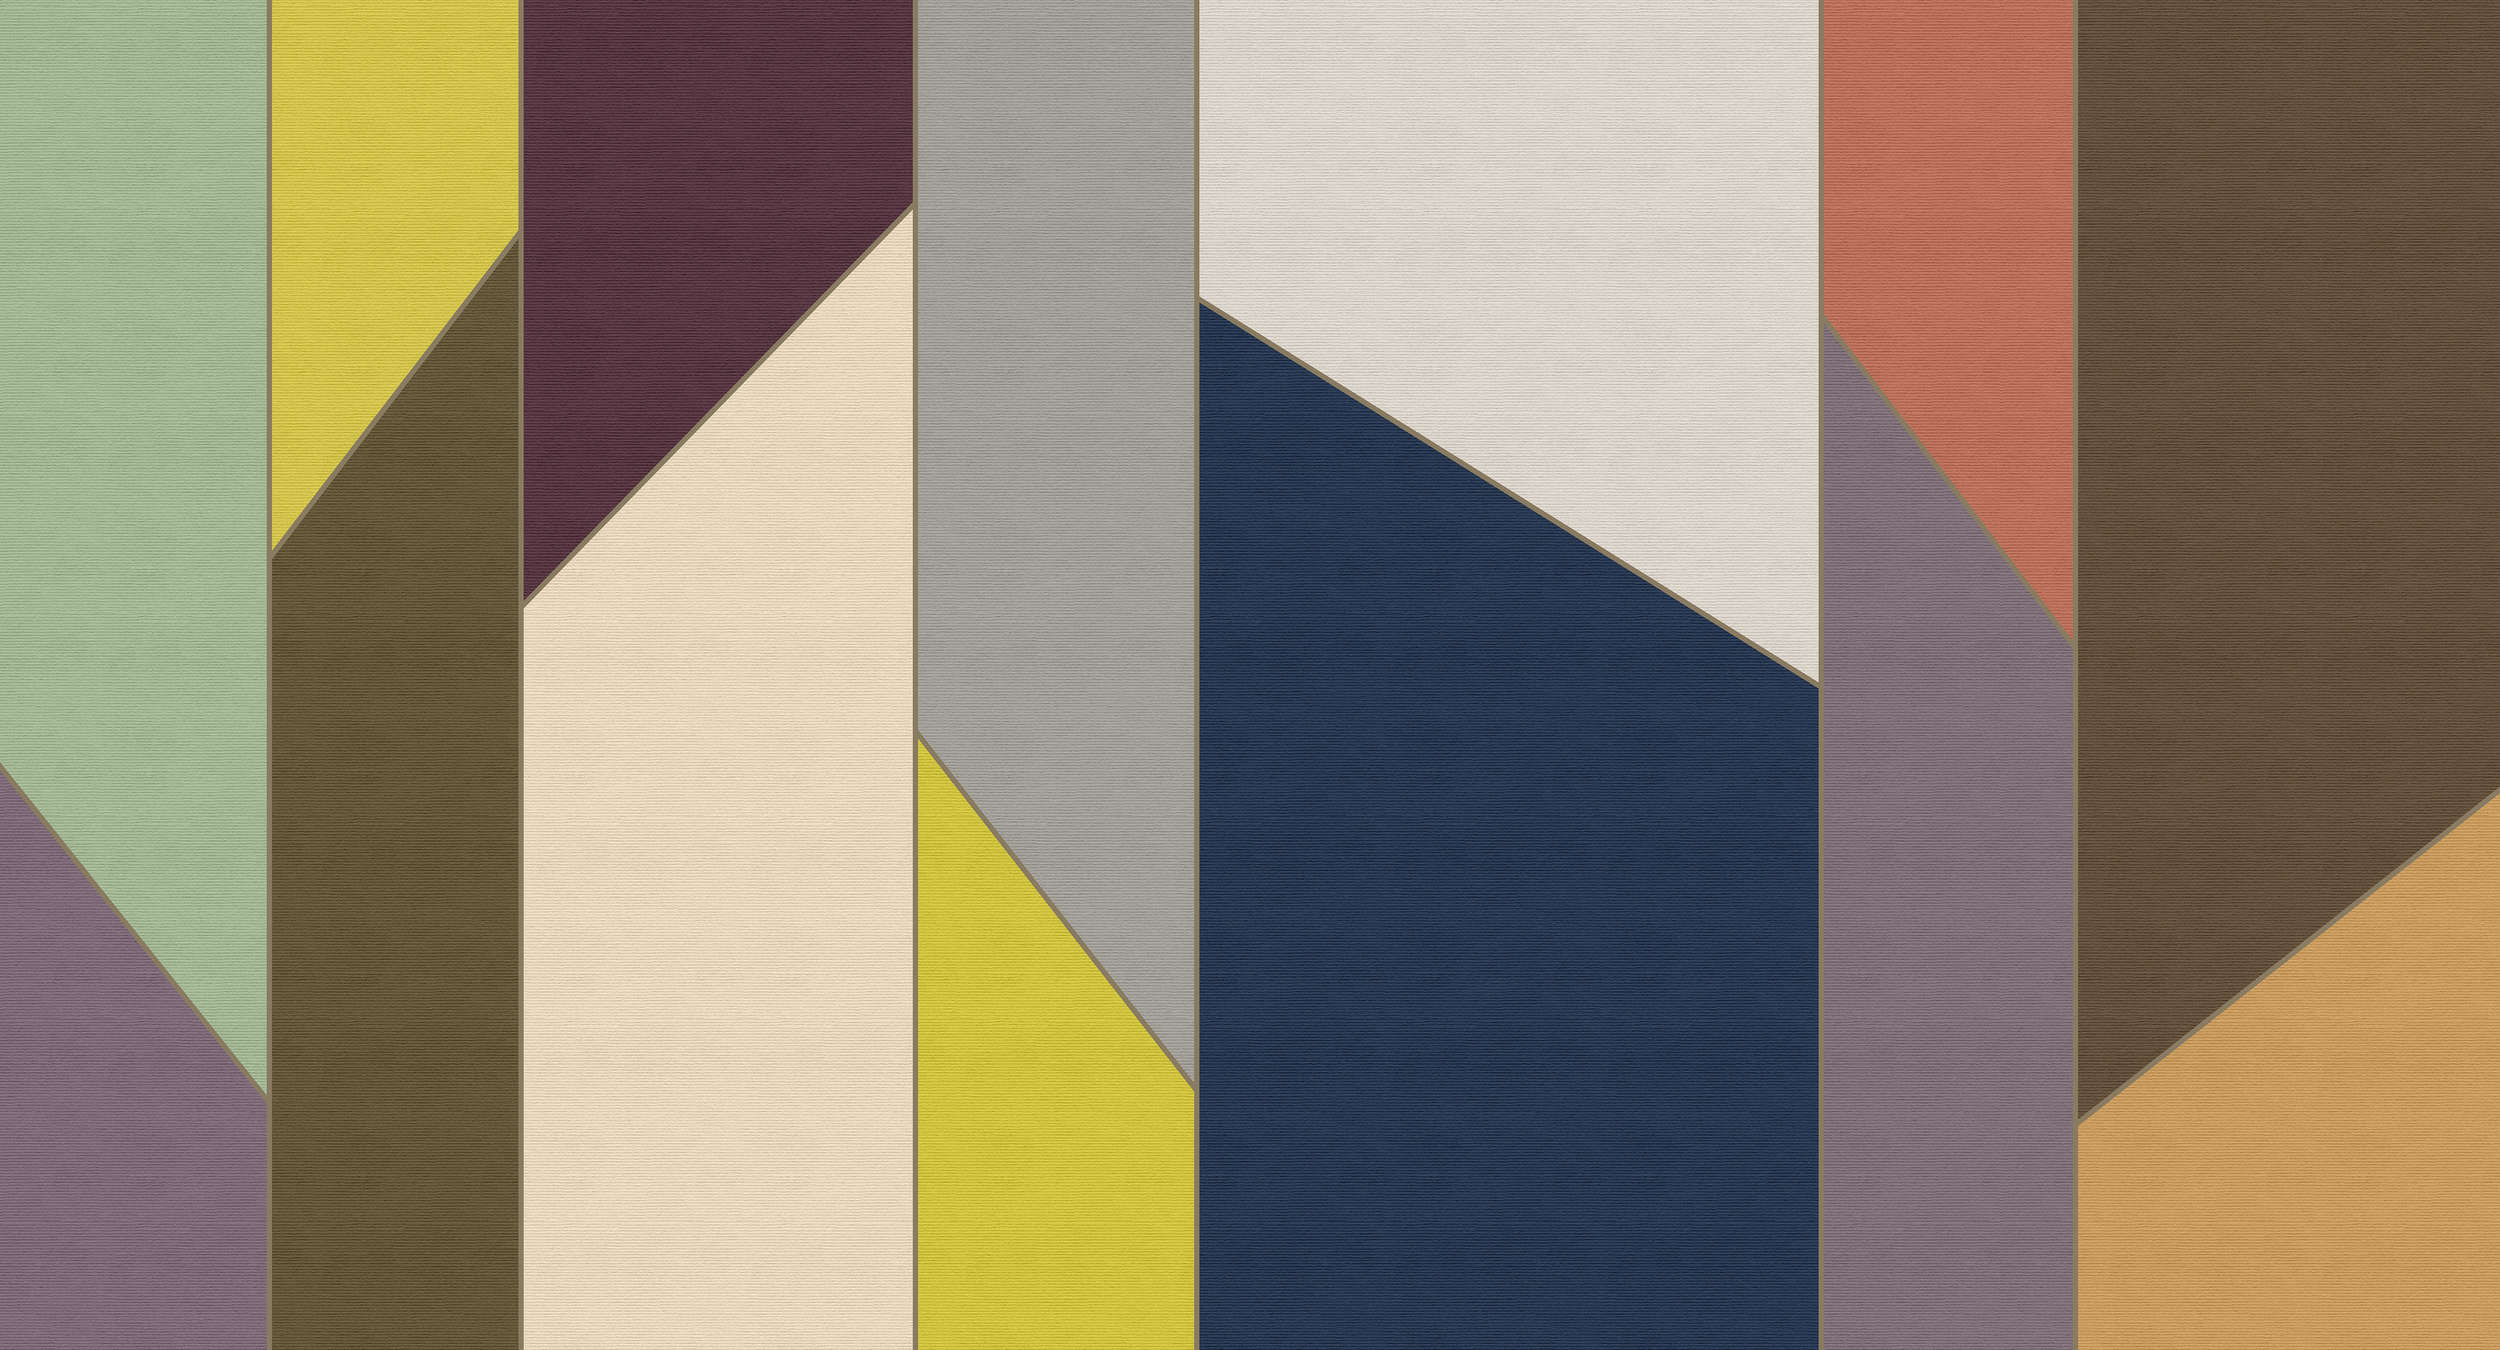             Geometry 4 - Stripe behang kleurrijke retro design in ribbelstructuur - Beige, Blue | Pearl smooth fleece
        